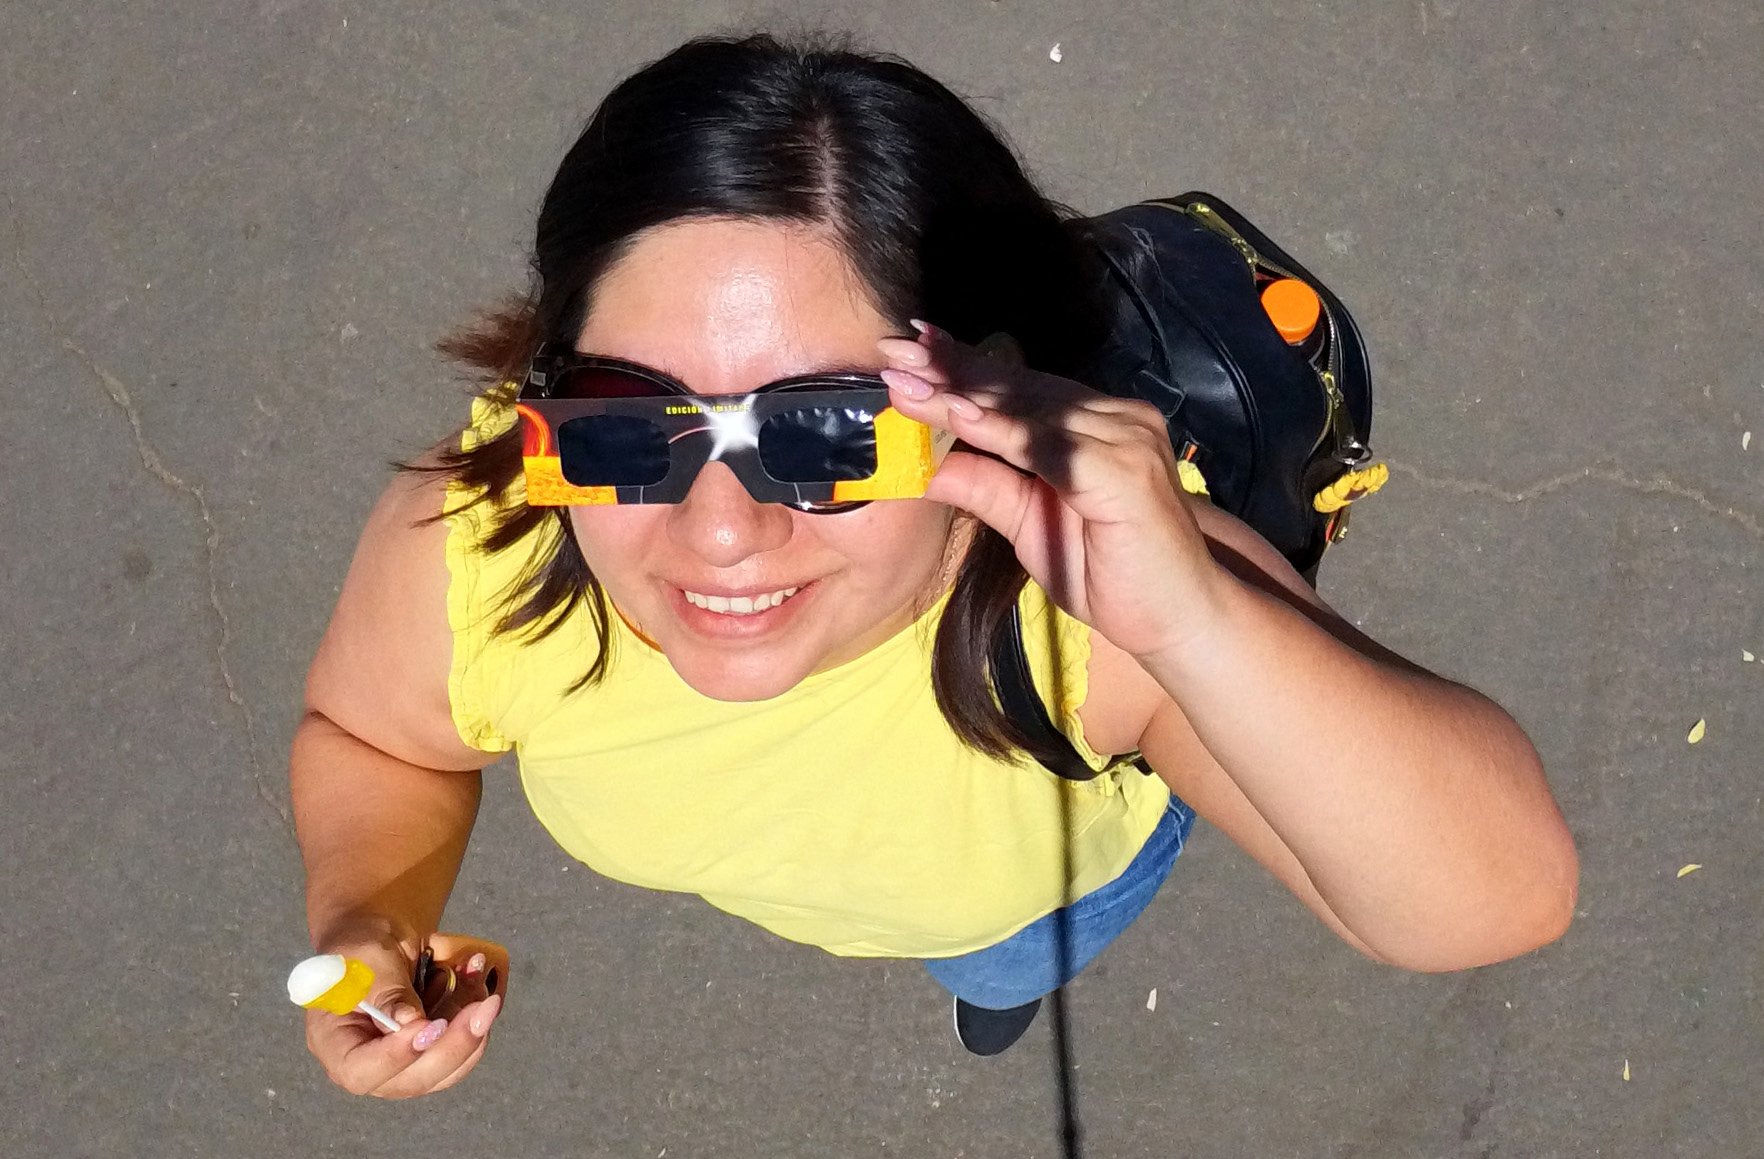 Eclipse solar: mulher usa óculos para observar o fenômeno em Guadalajara, México